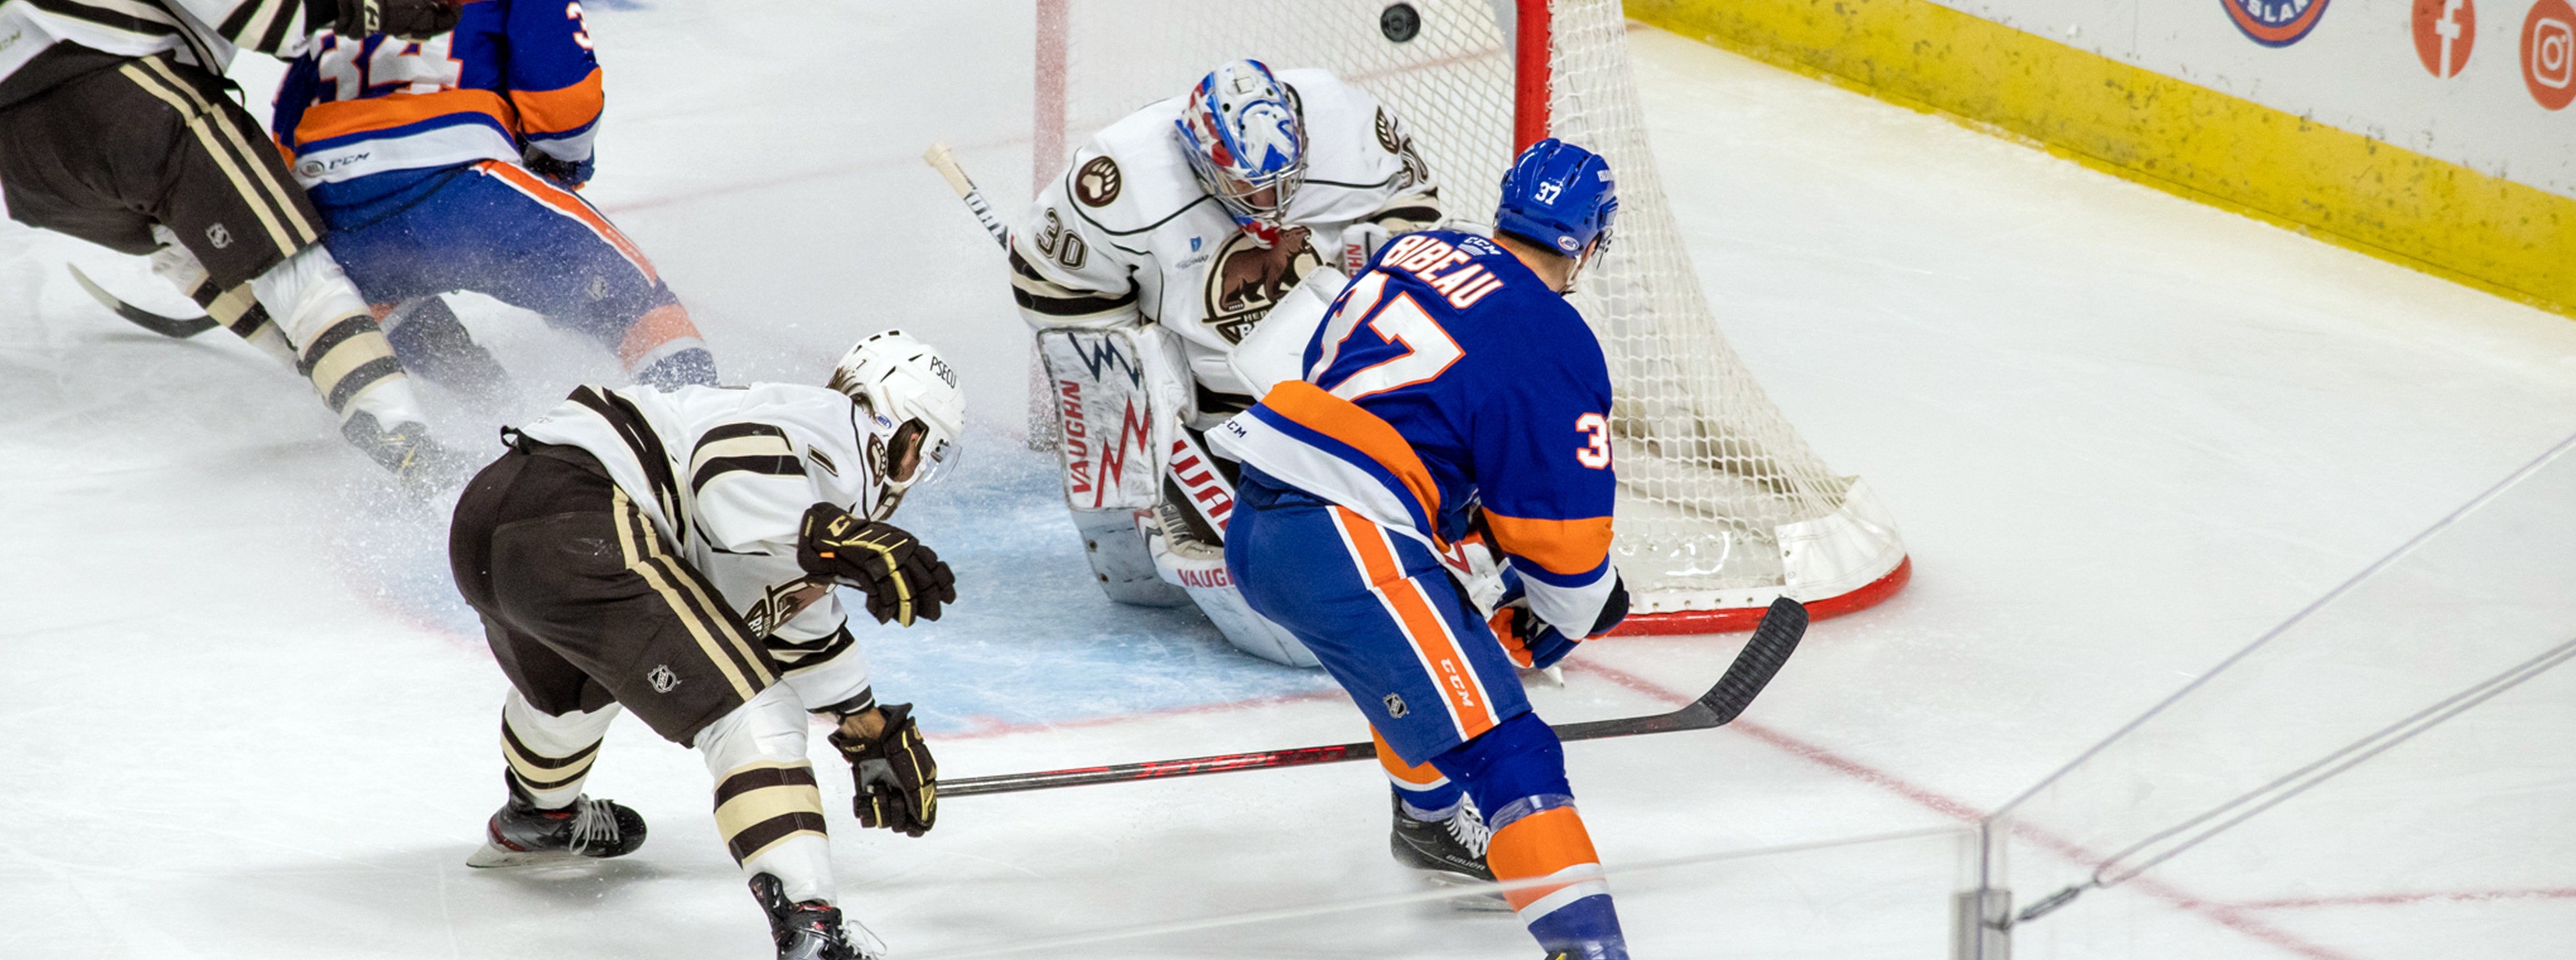 Weekend Preview: Islanders Battle Bears, Bruins